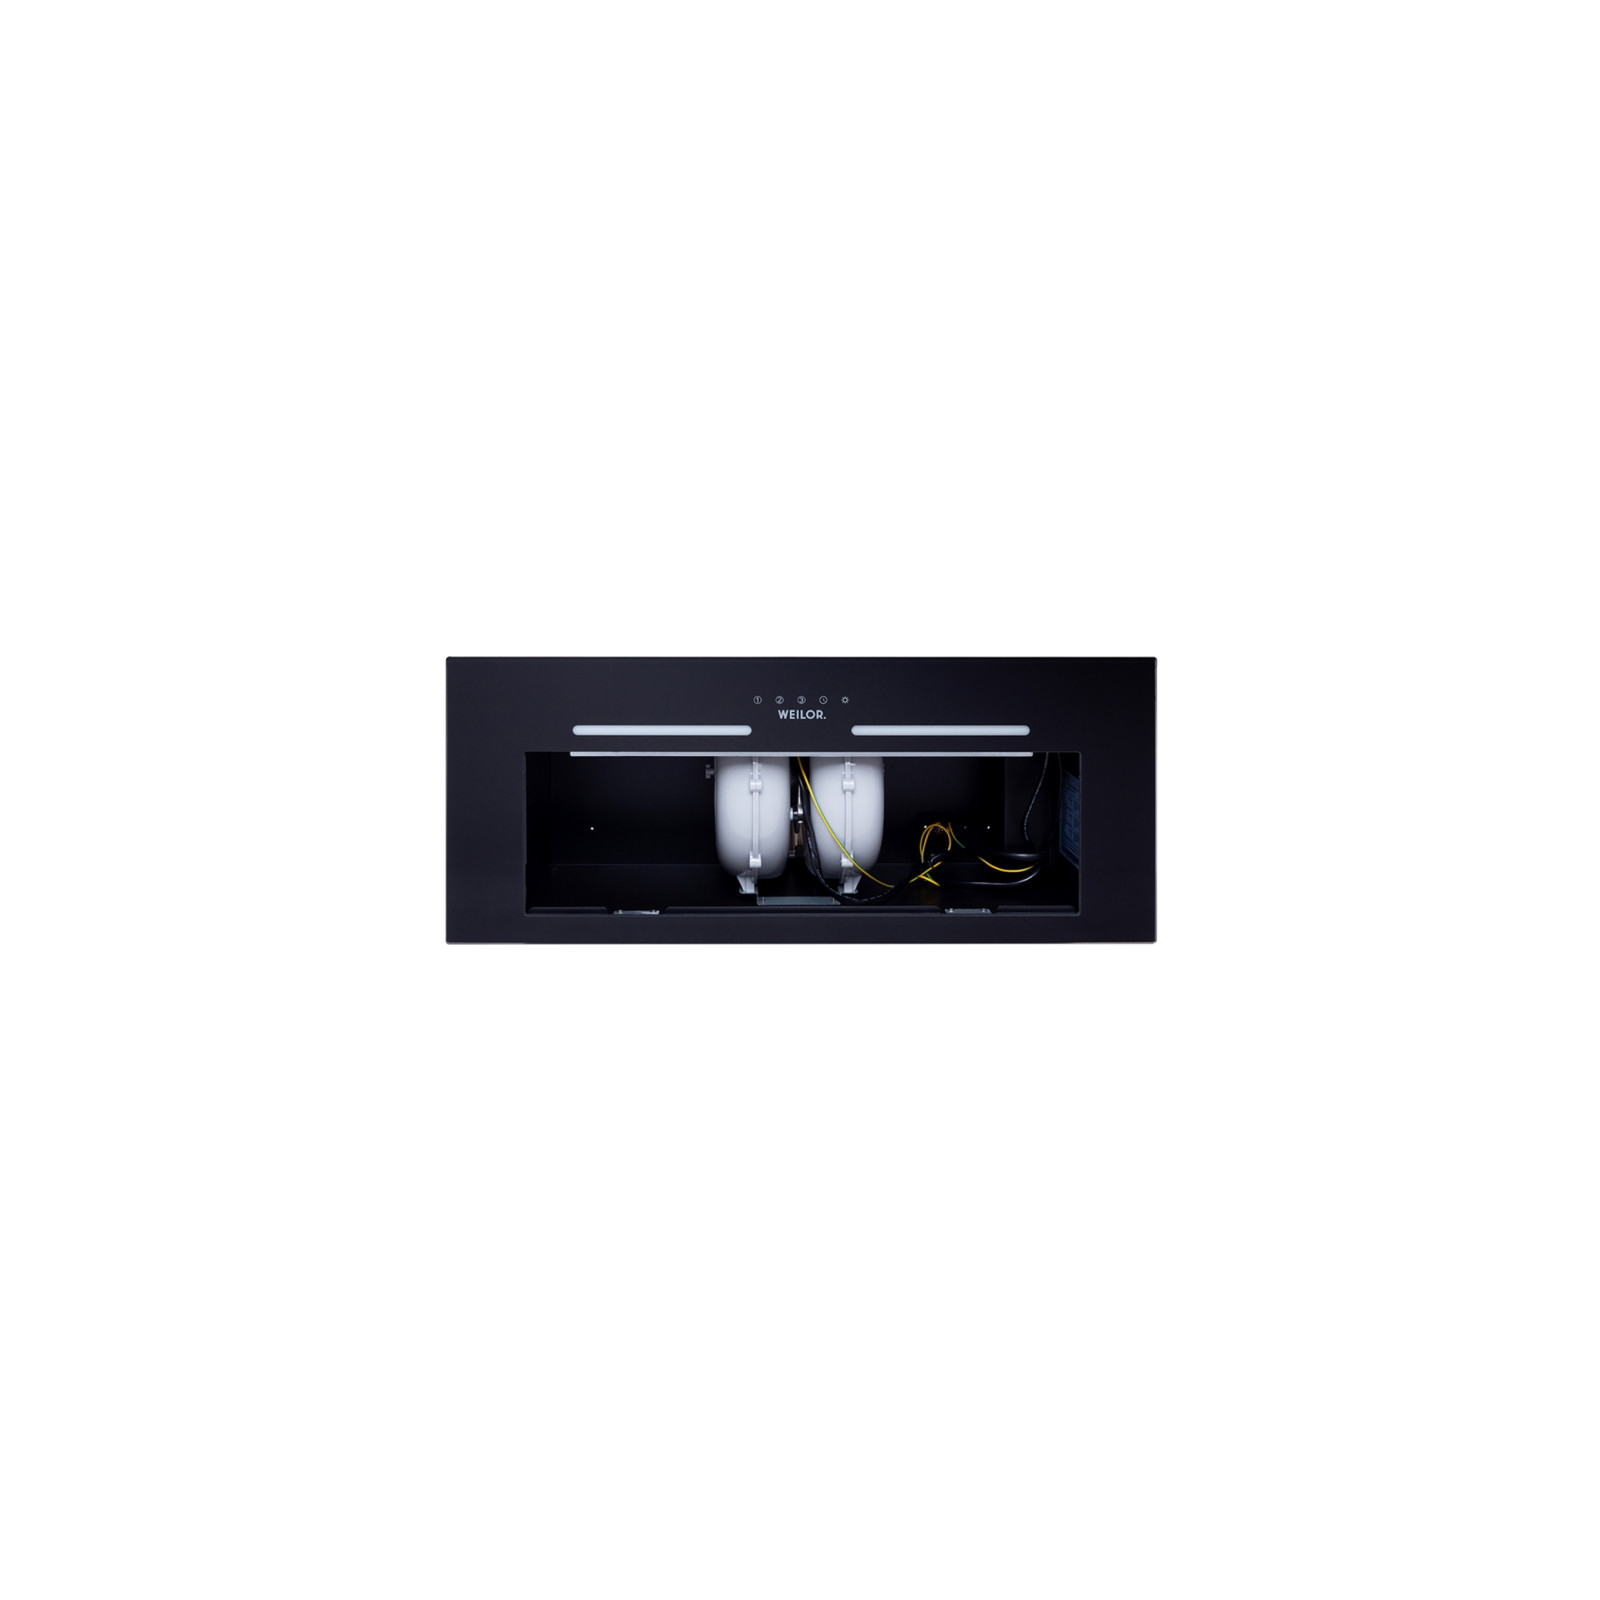 Вытяжка кухонная Weilor PBS 72650 GLASS BG 1250 LED Strip изображение 7